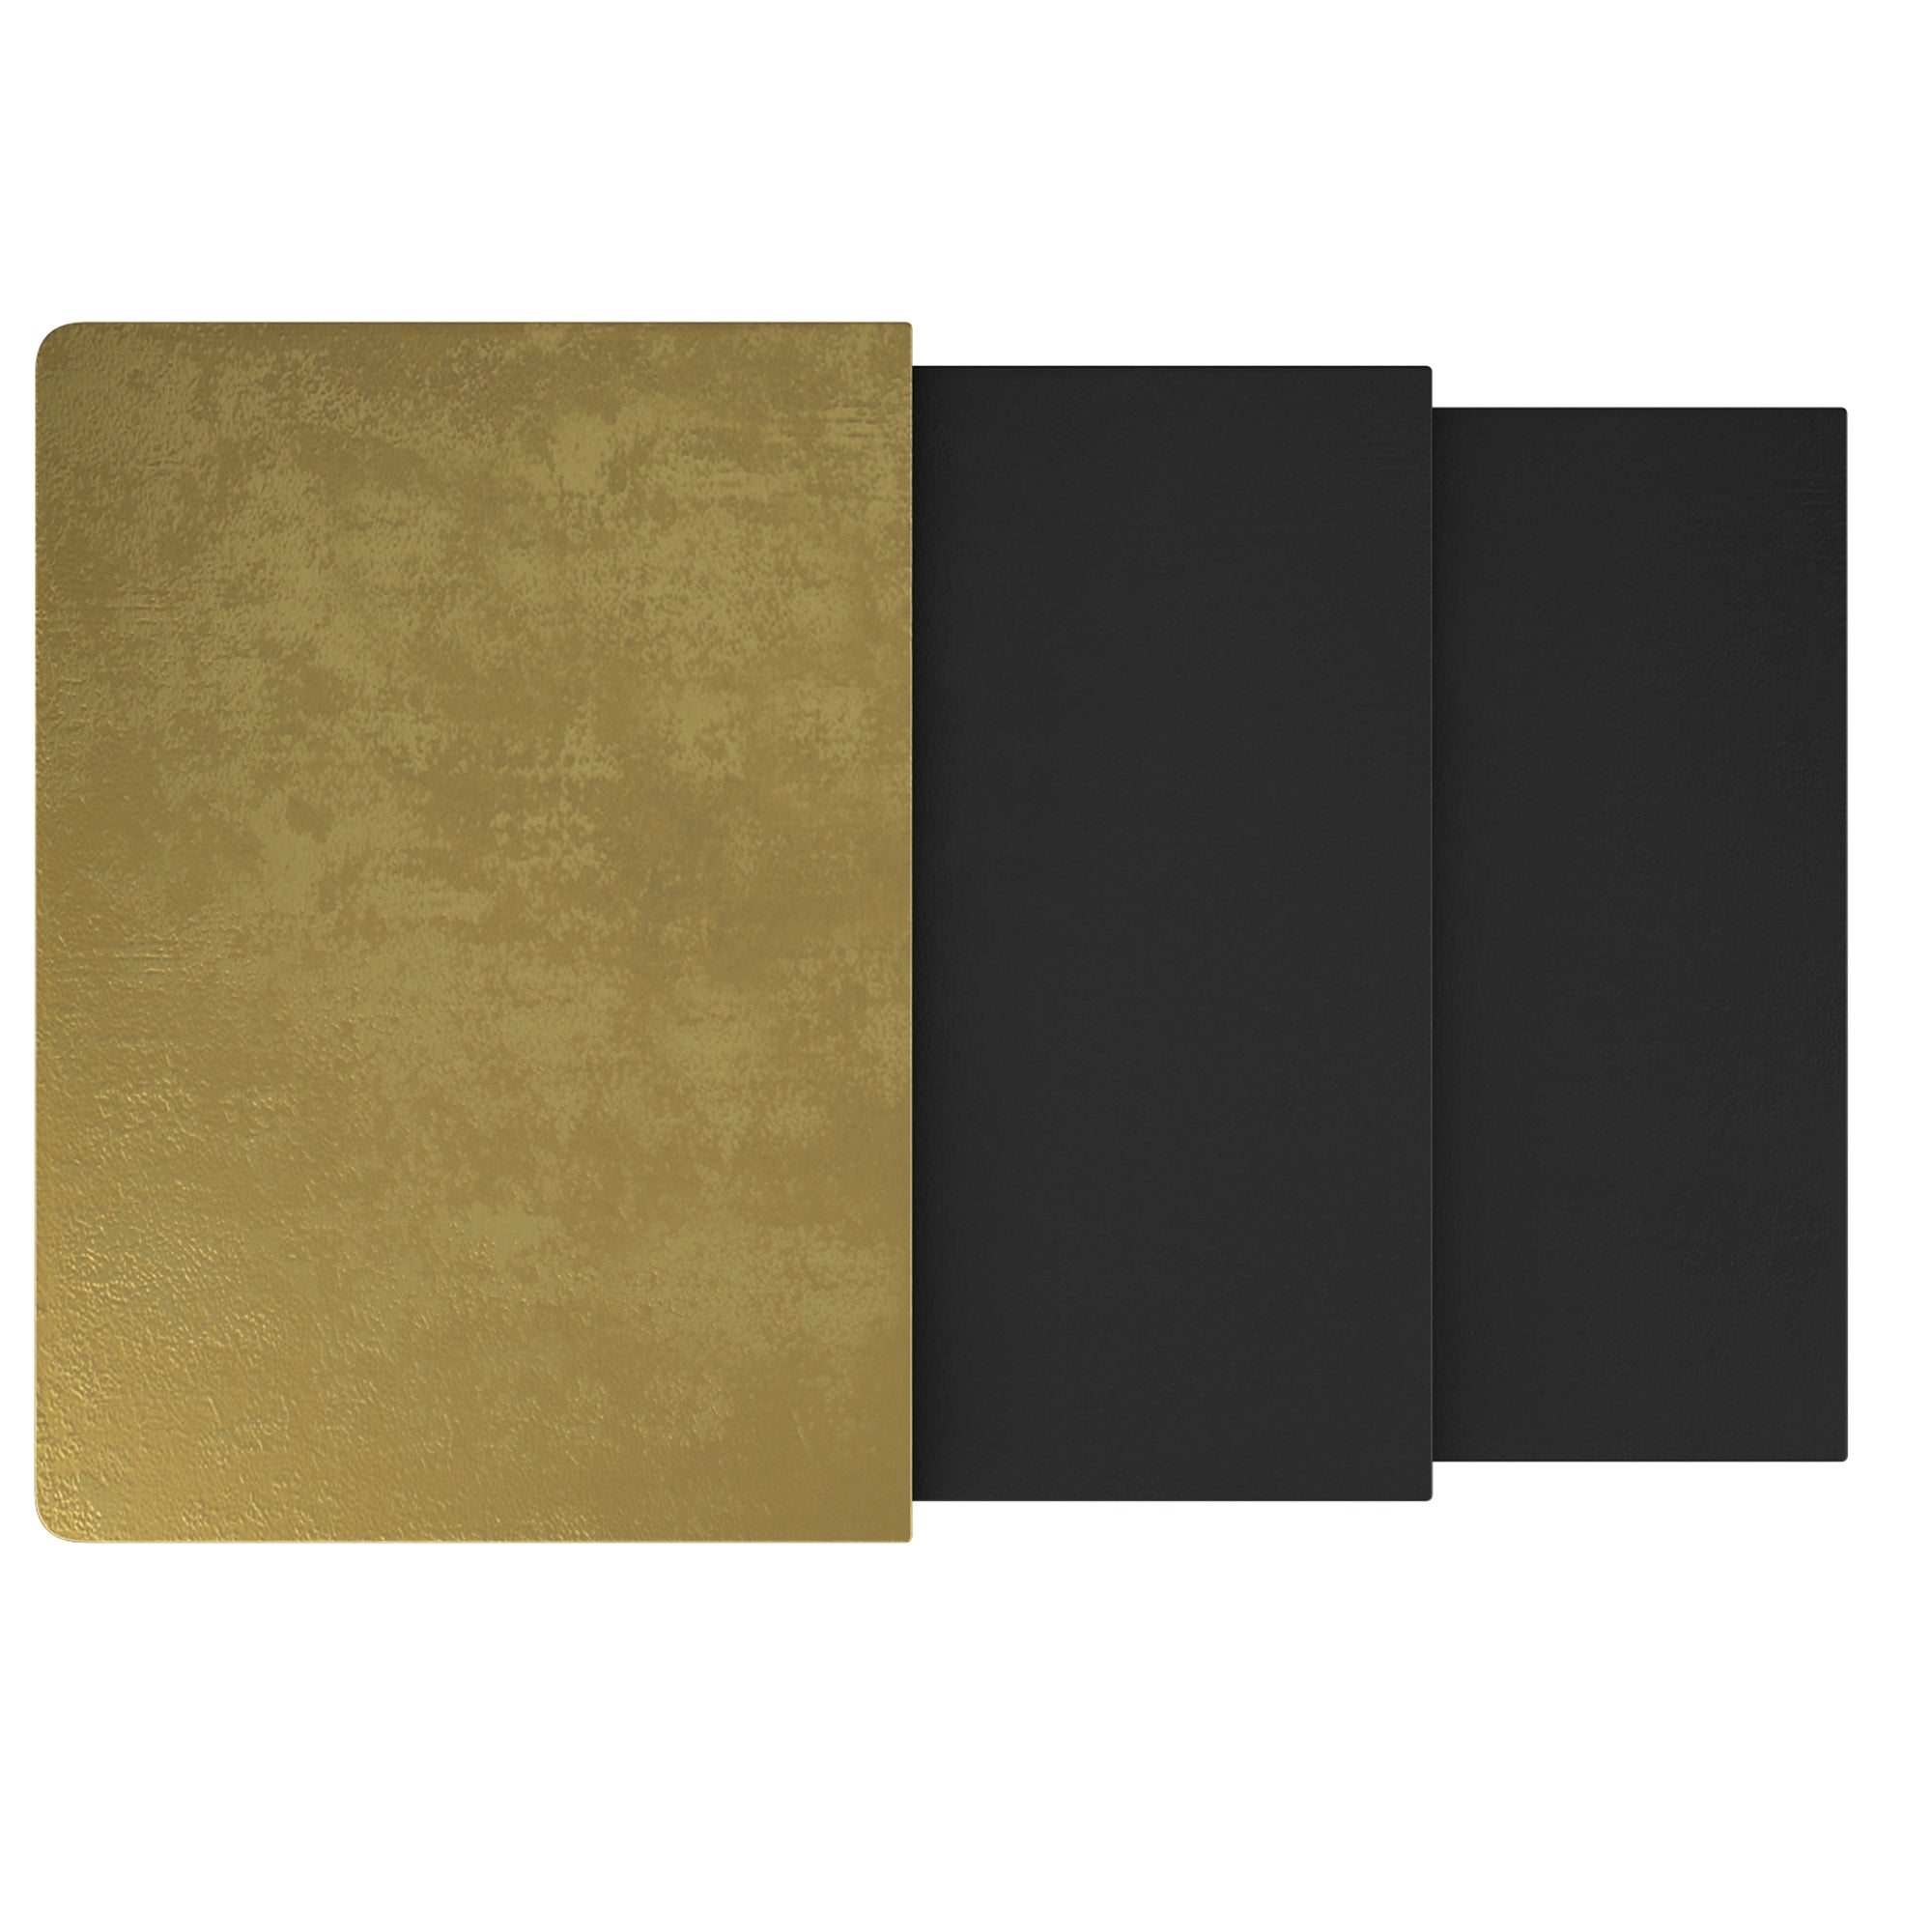 BRISTOL-3PC ACCENT TABLE-ANTIQUE GOLD BLACK